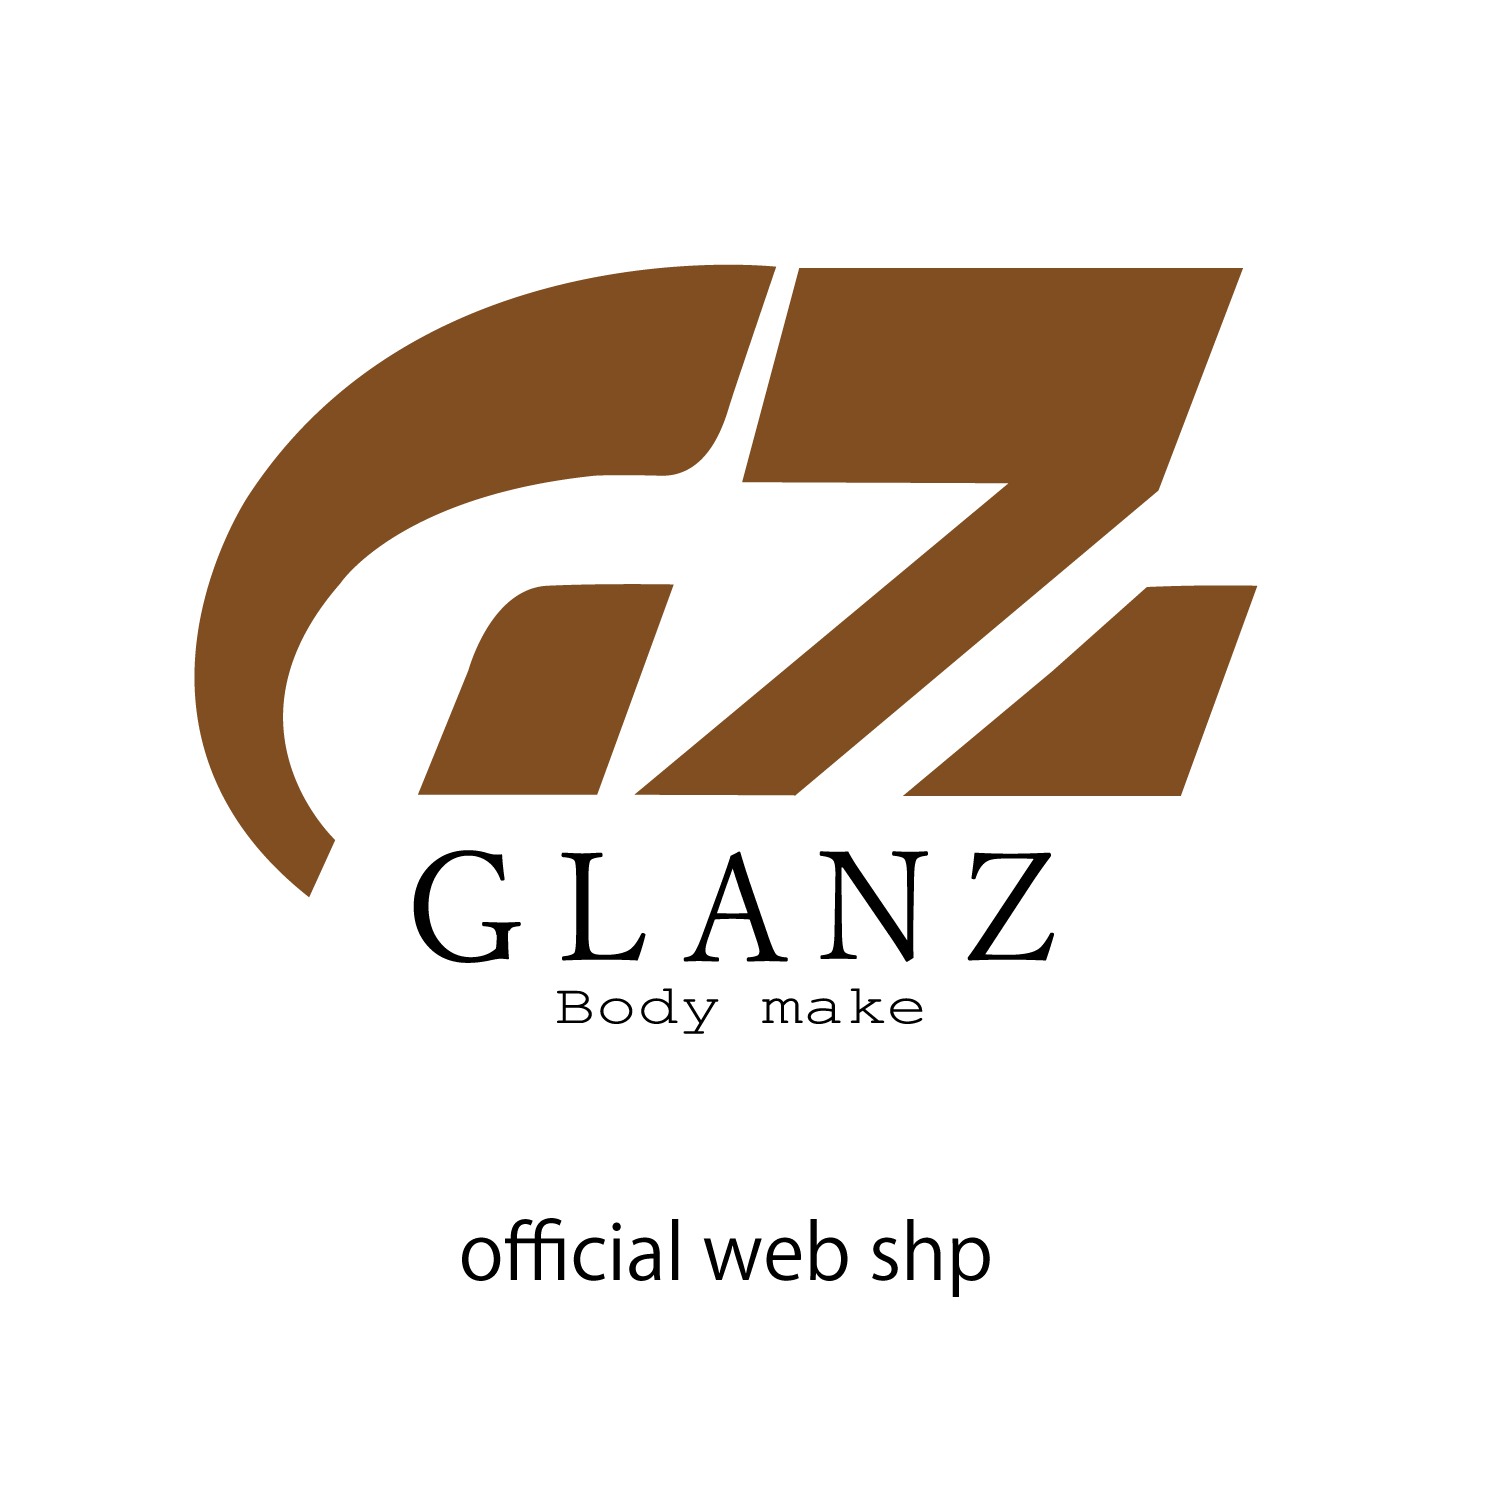 GLANZ official web shop